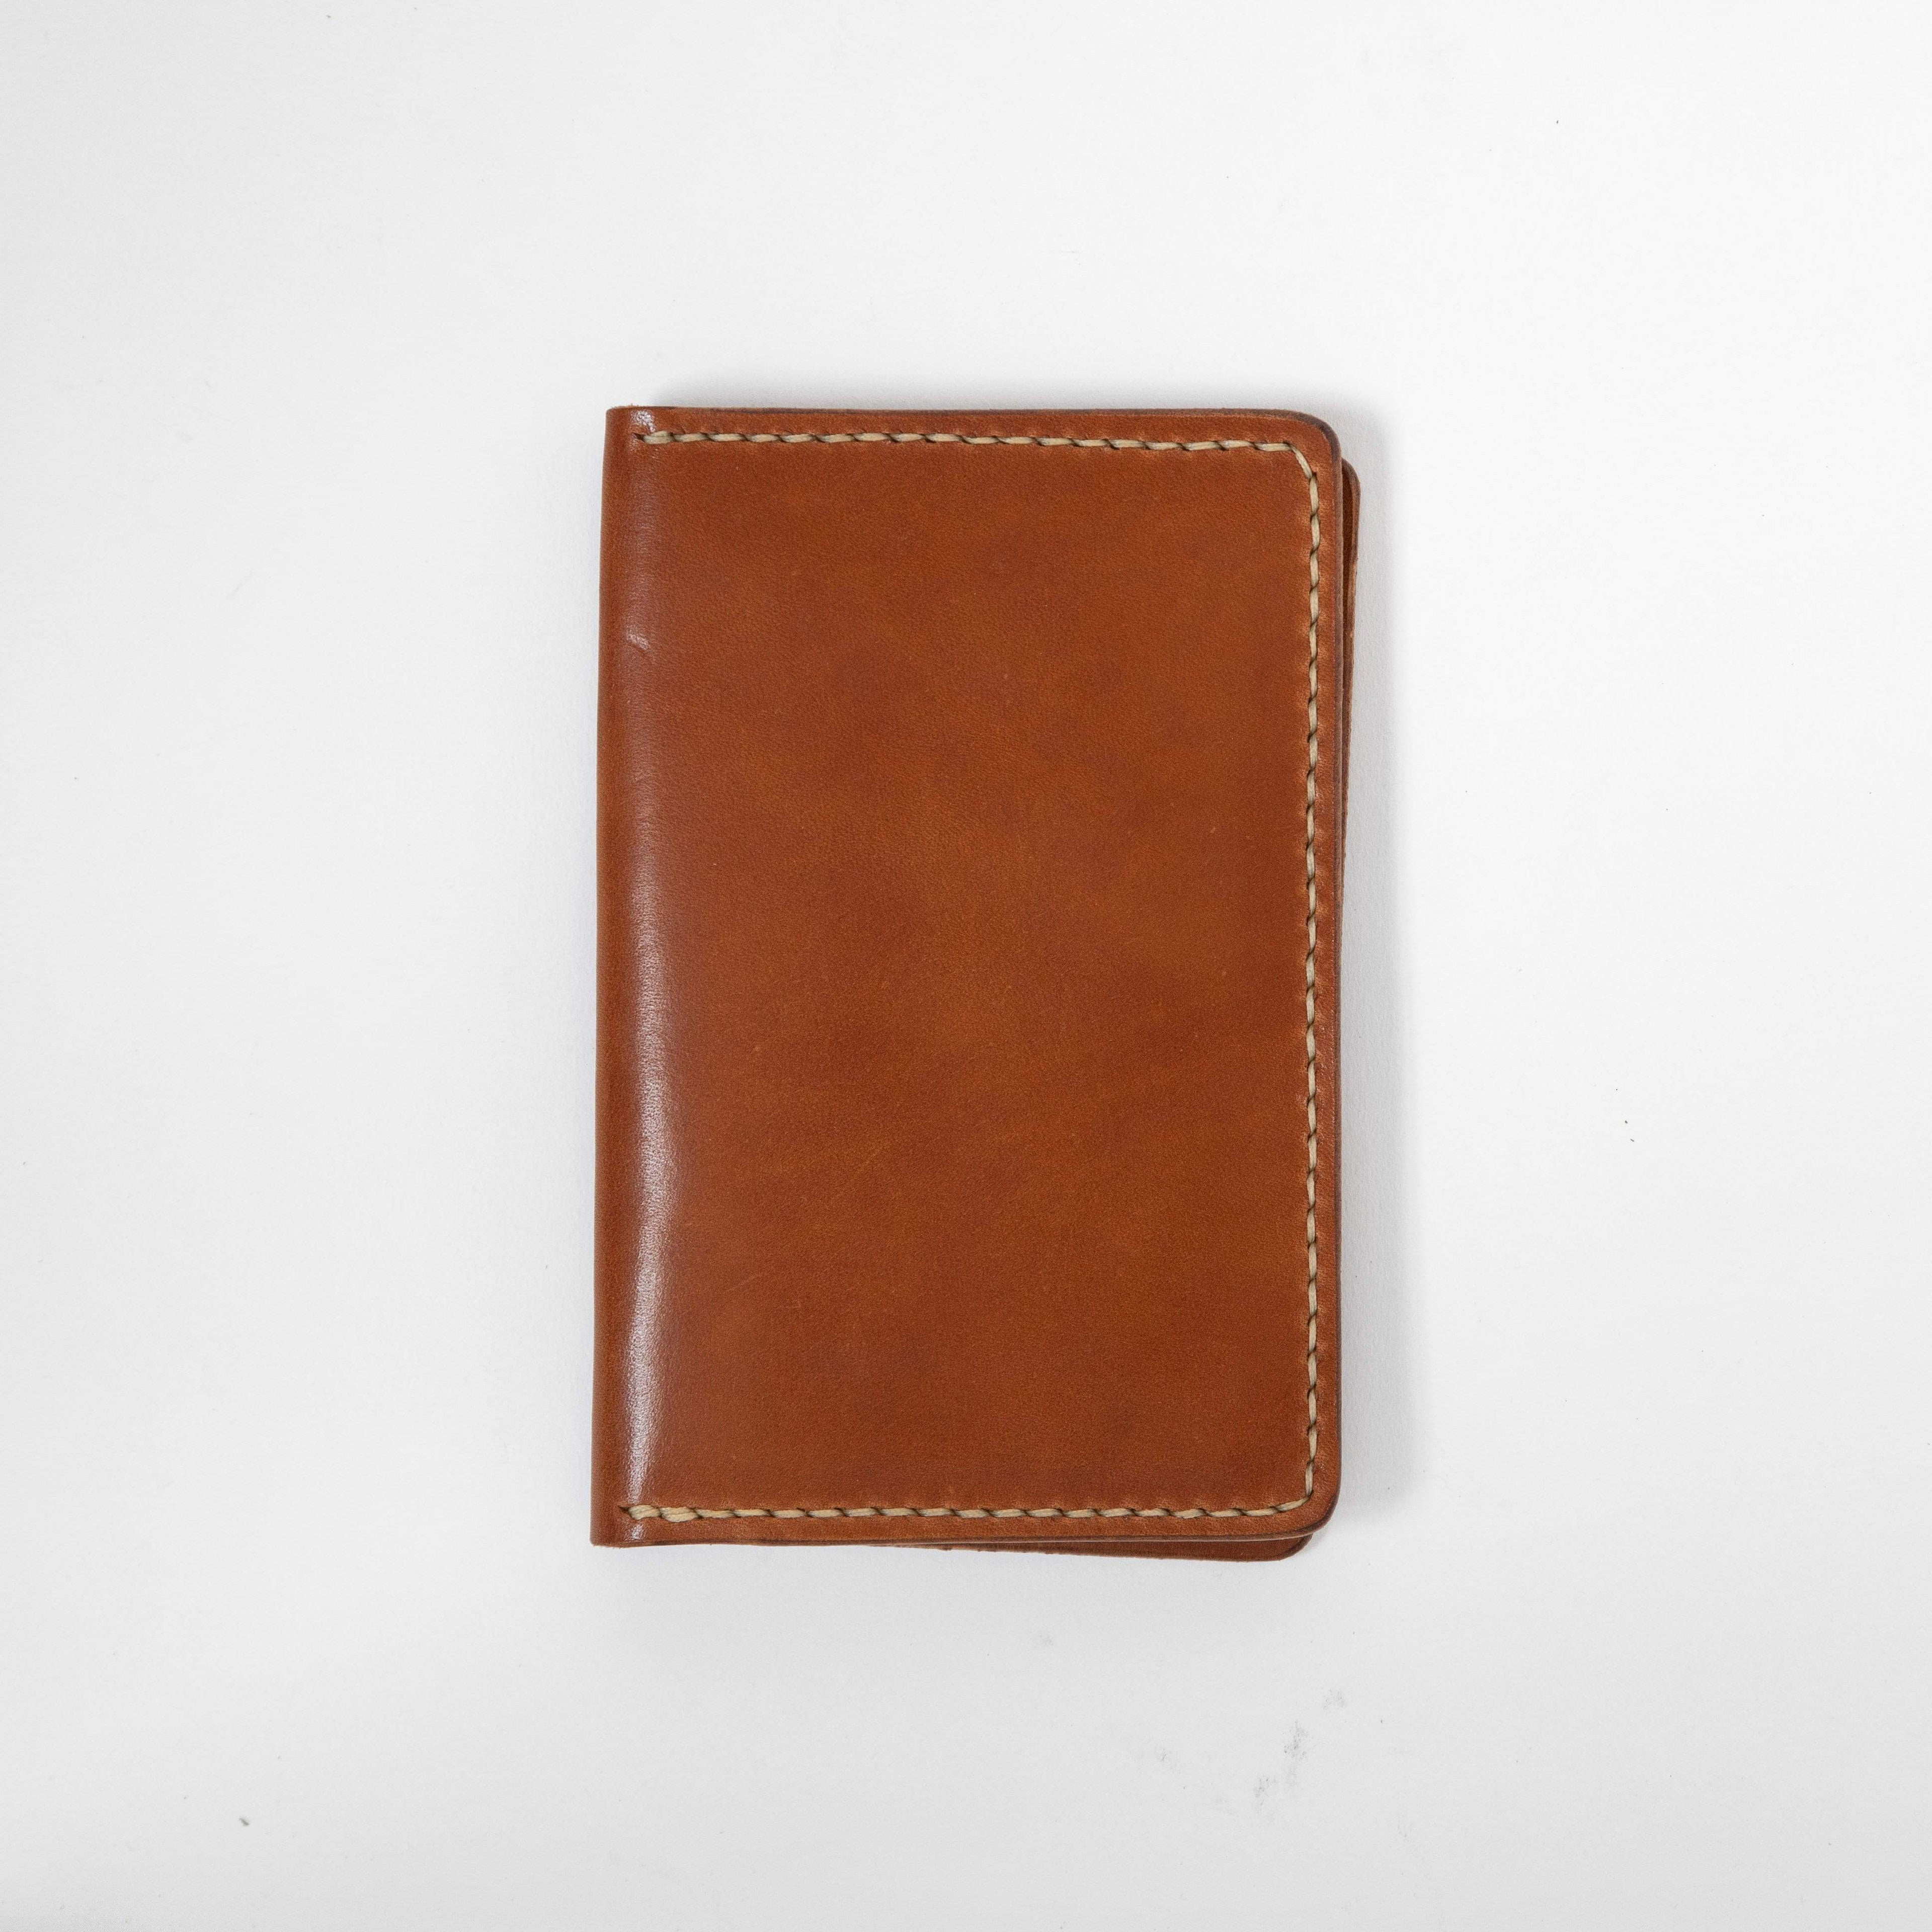 Vertical Zip Wallet the West Zip Wallet Handmade Premium 